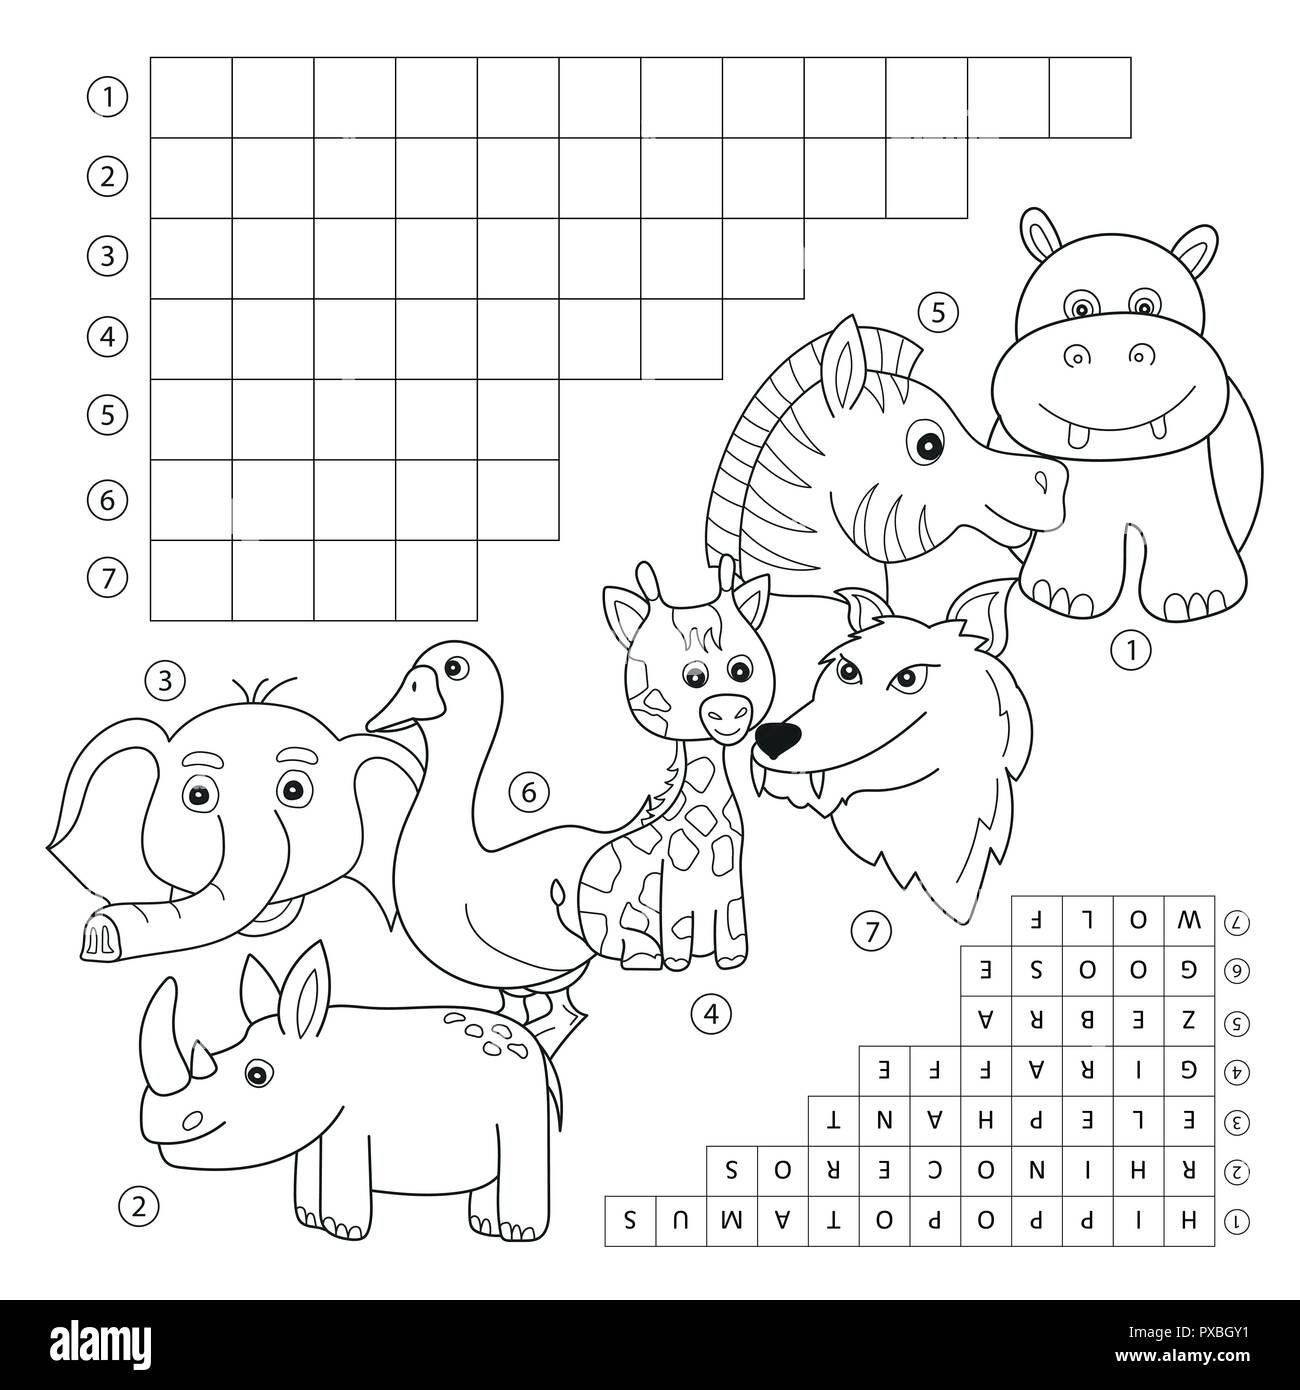 Cuaderno para colorear - Imagenes Educativas  Libros para colorear,  Dibujos para colorear, Animales animados para colorear